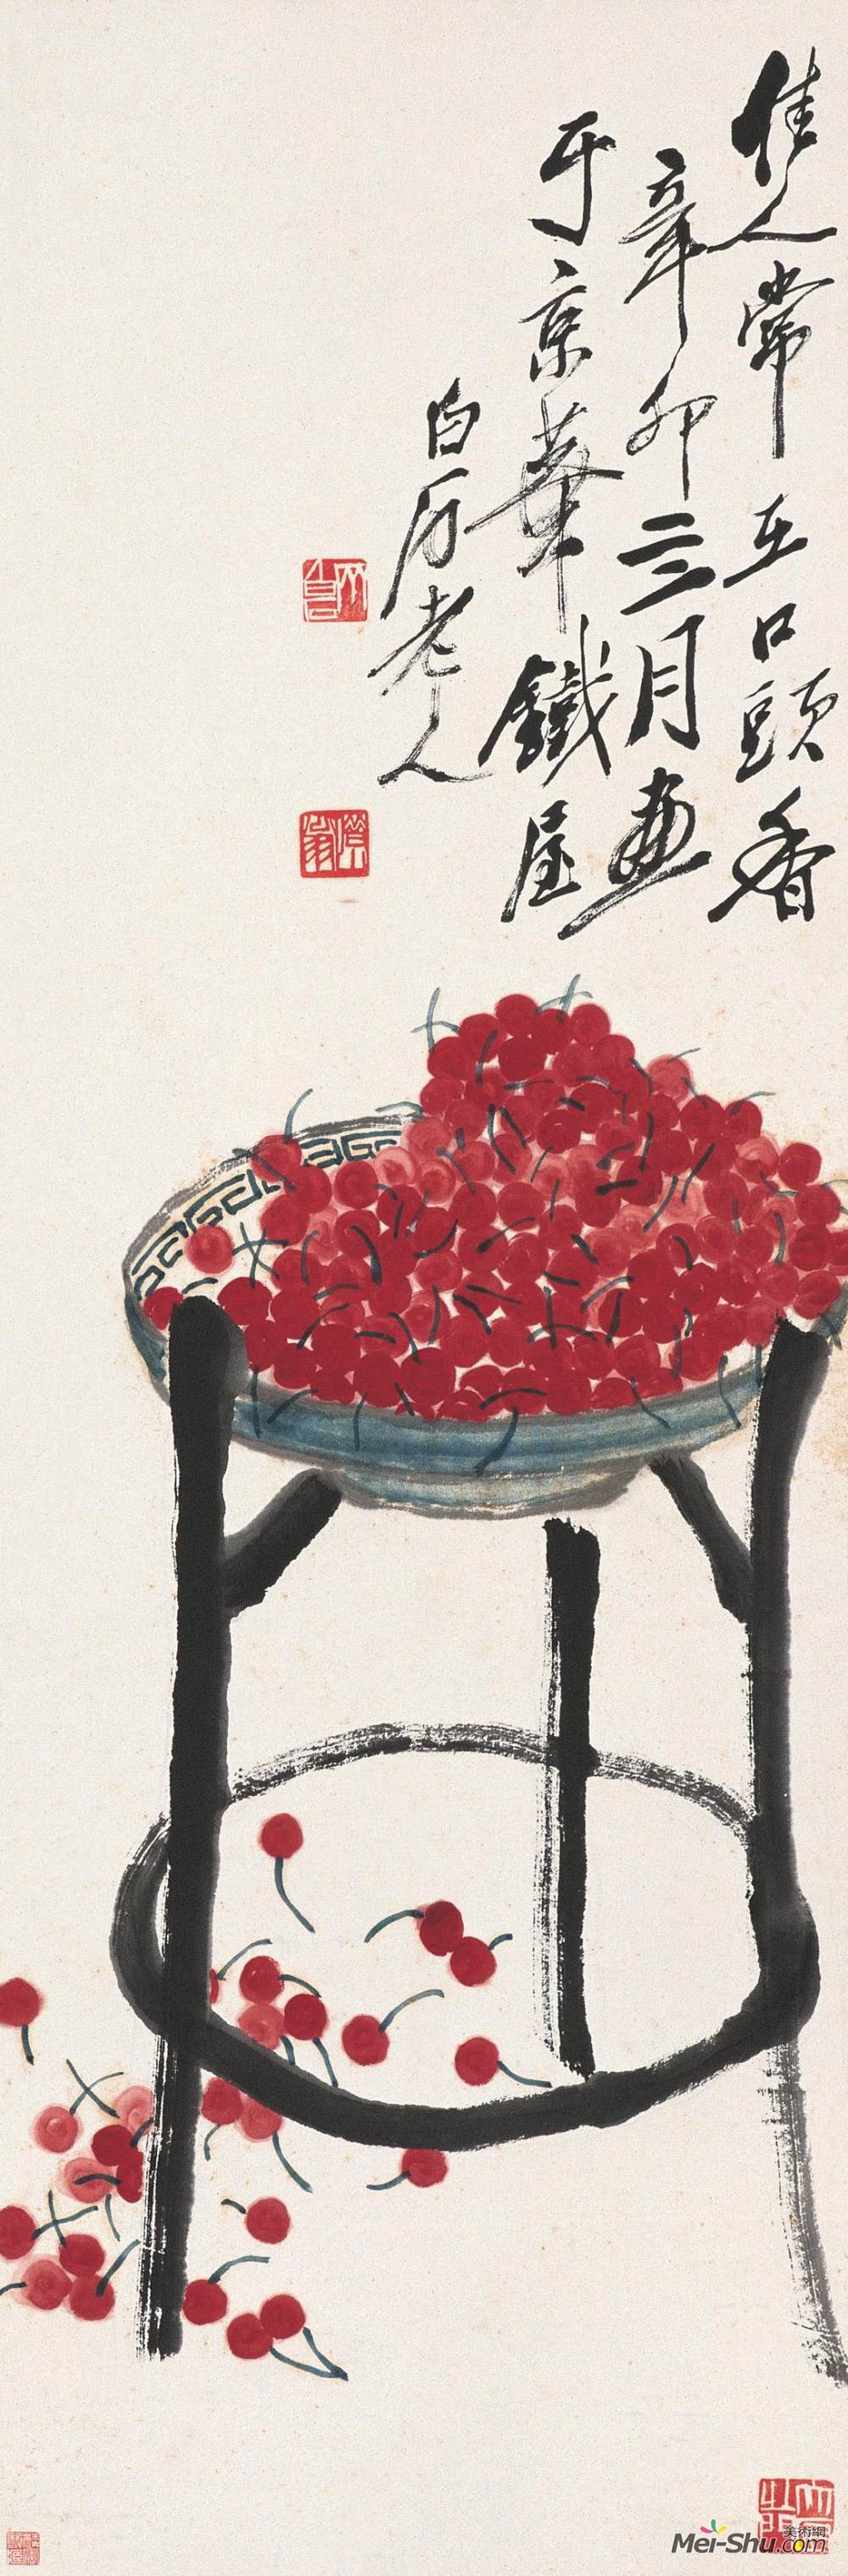 《樱桃》齐白石中国画艺术作品欣赏